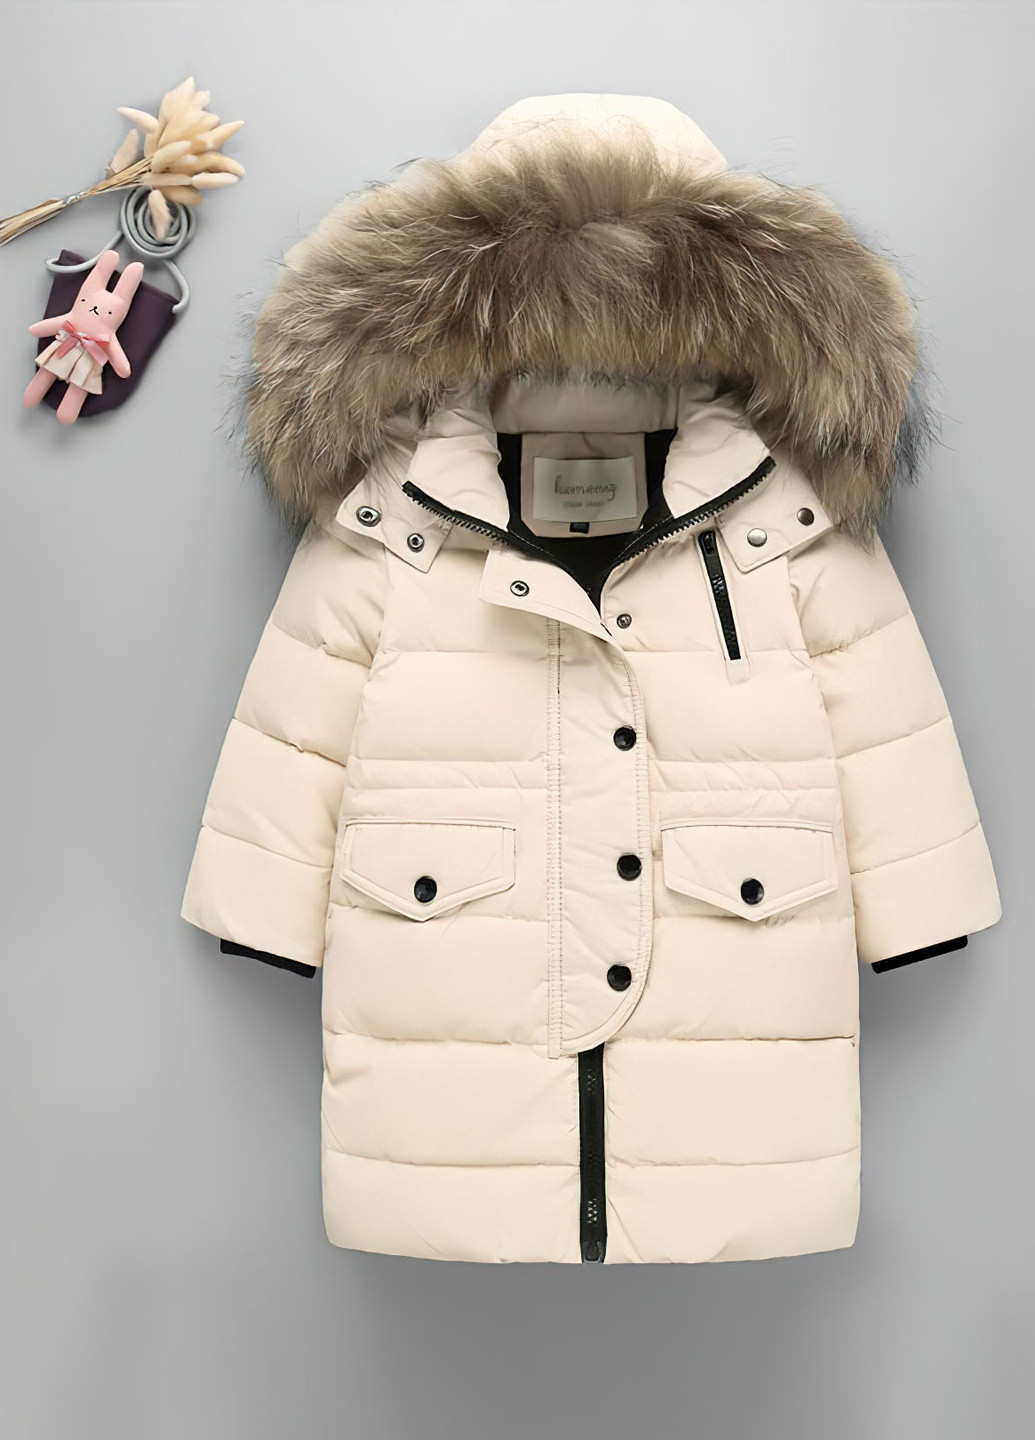 Бежевая куртка для девочки пуховая зимняя 8495 120 см бежевый 63058 DobraMAMA